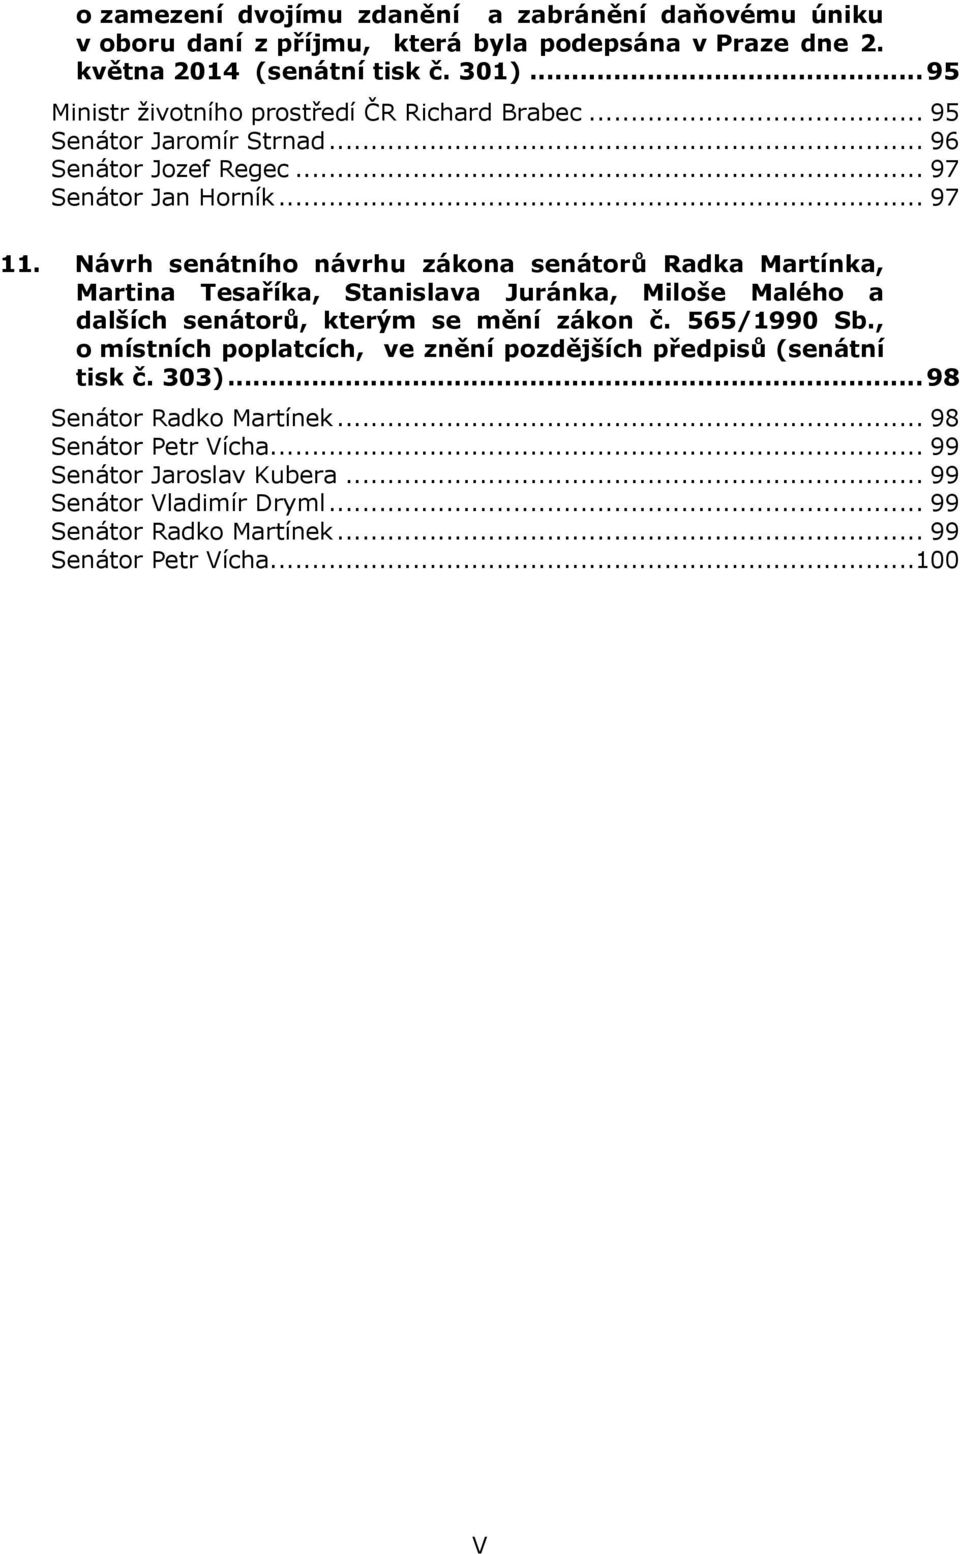 Návrh senátního návrhu zákona senátorů Radka Martínka, Martina Tesaříka, Stanislava Juránka, Miloše Malého a dalších senátorů, kterým se mění zákon č. 565/1990 Sb.